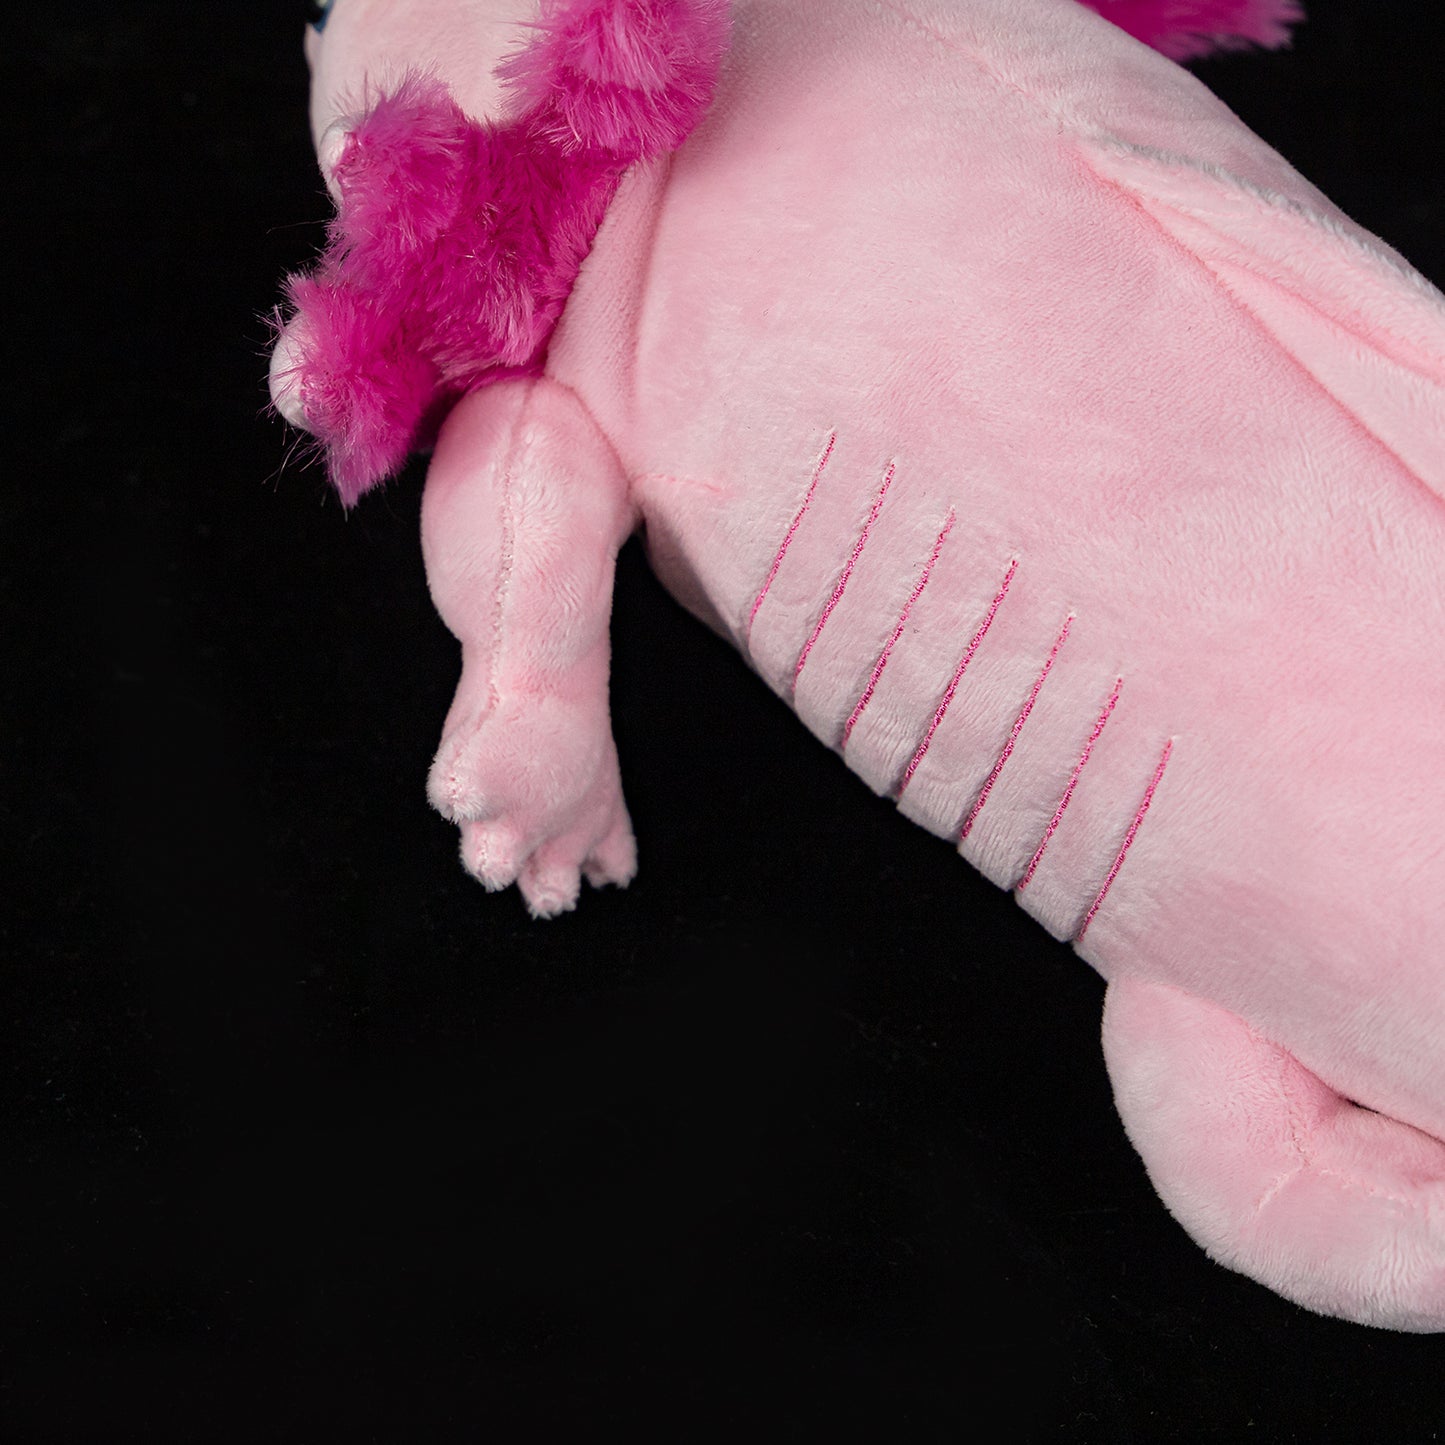 Rosa Axolotl mjuk plyschleksak